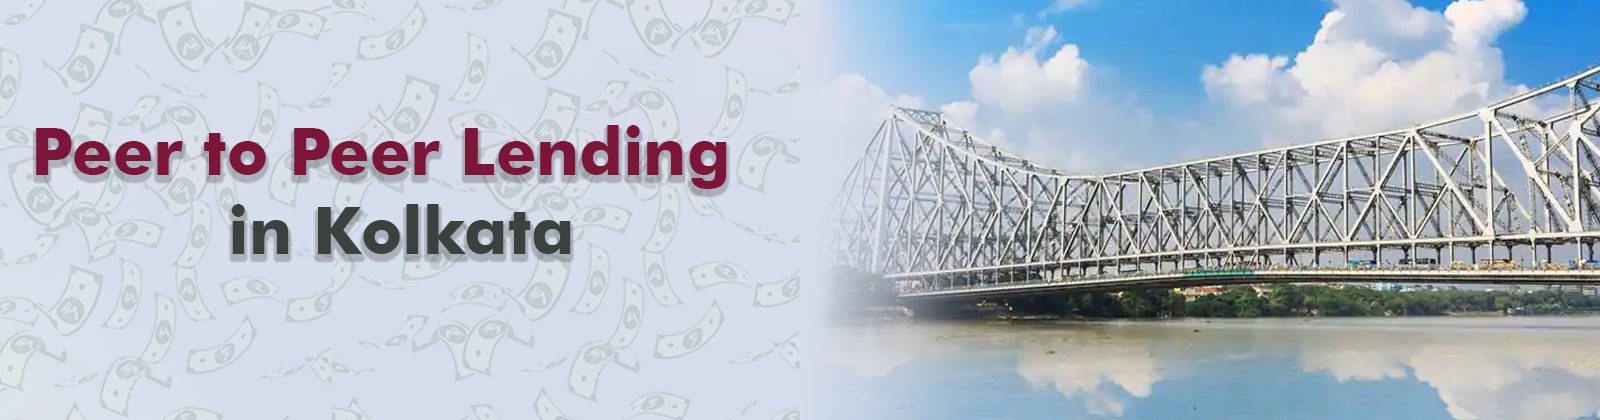 Peer to Peer Lending in Kolkata